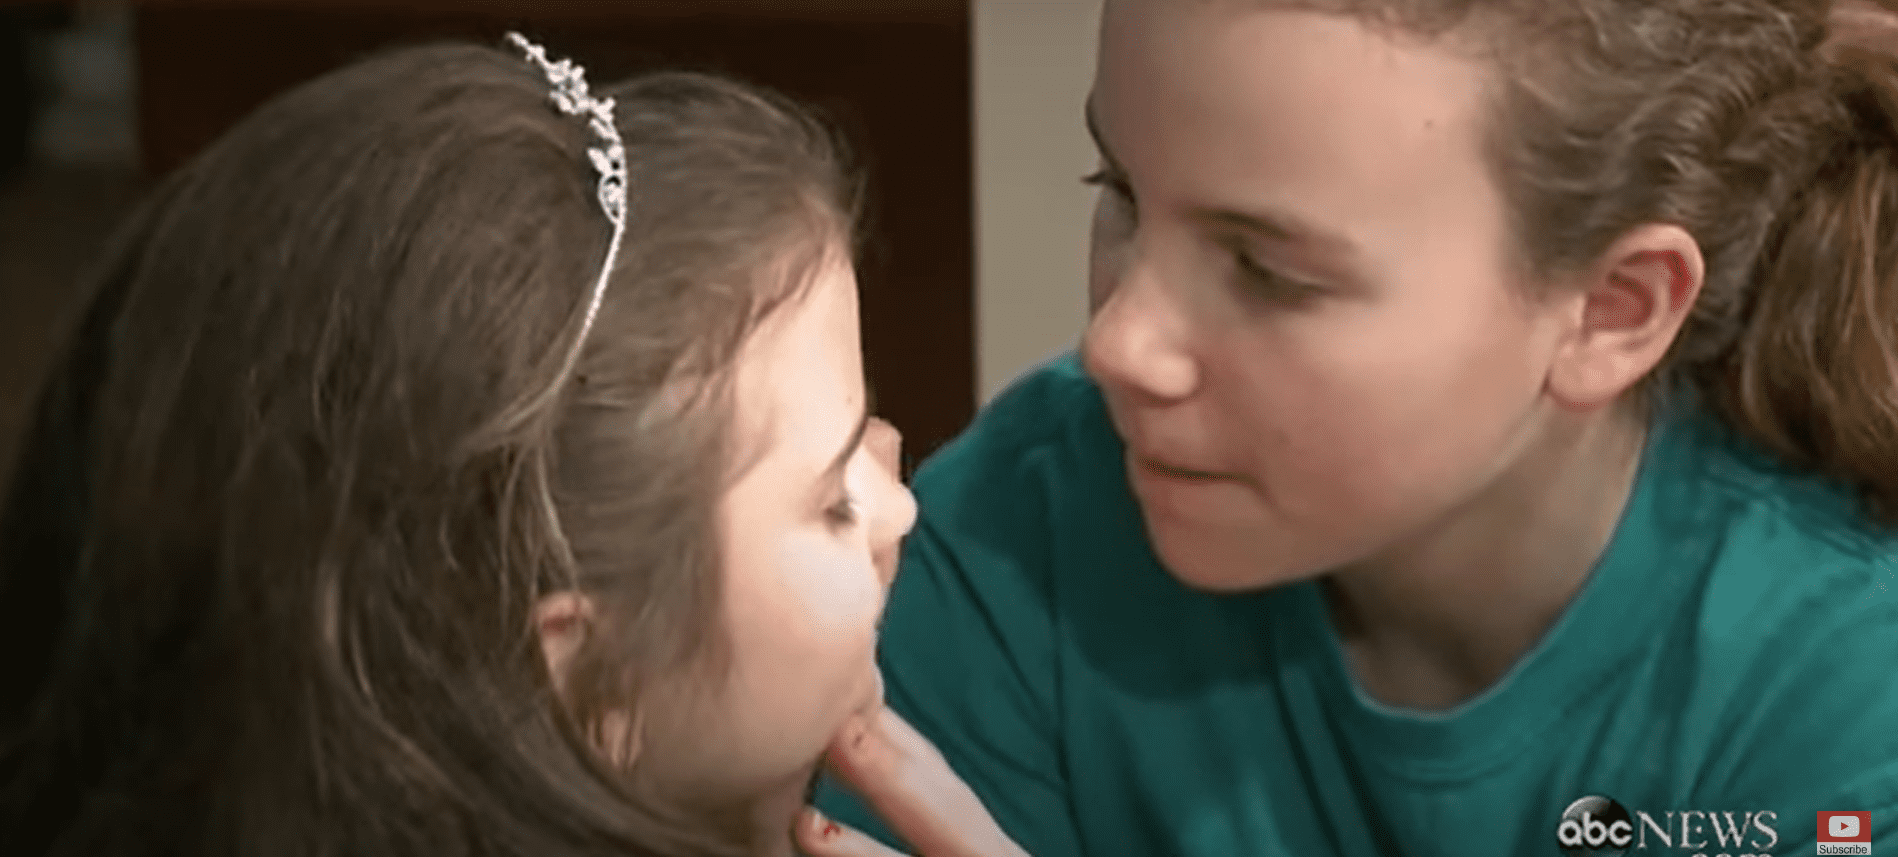 Rebekah Spaders ältere Schwester hilft ihr beim Make-up für ihren besonderen Tag als Date ihres Bruders zu seinem Schulball. | Quelle: Youtube.com/ABC News